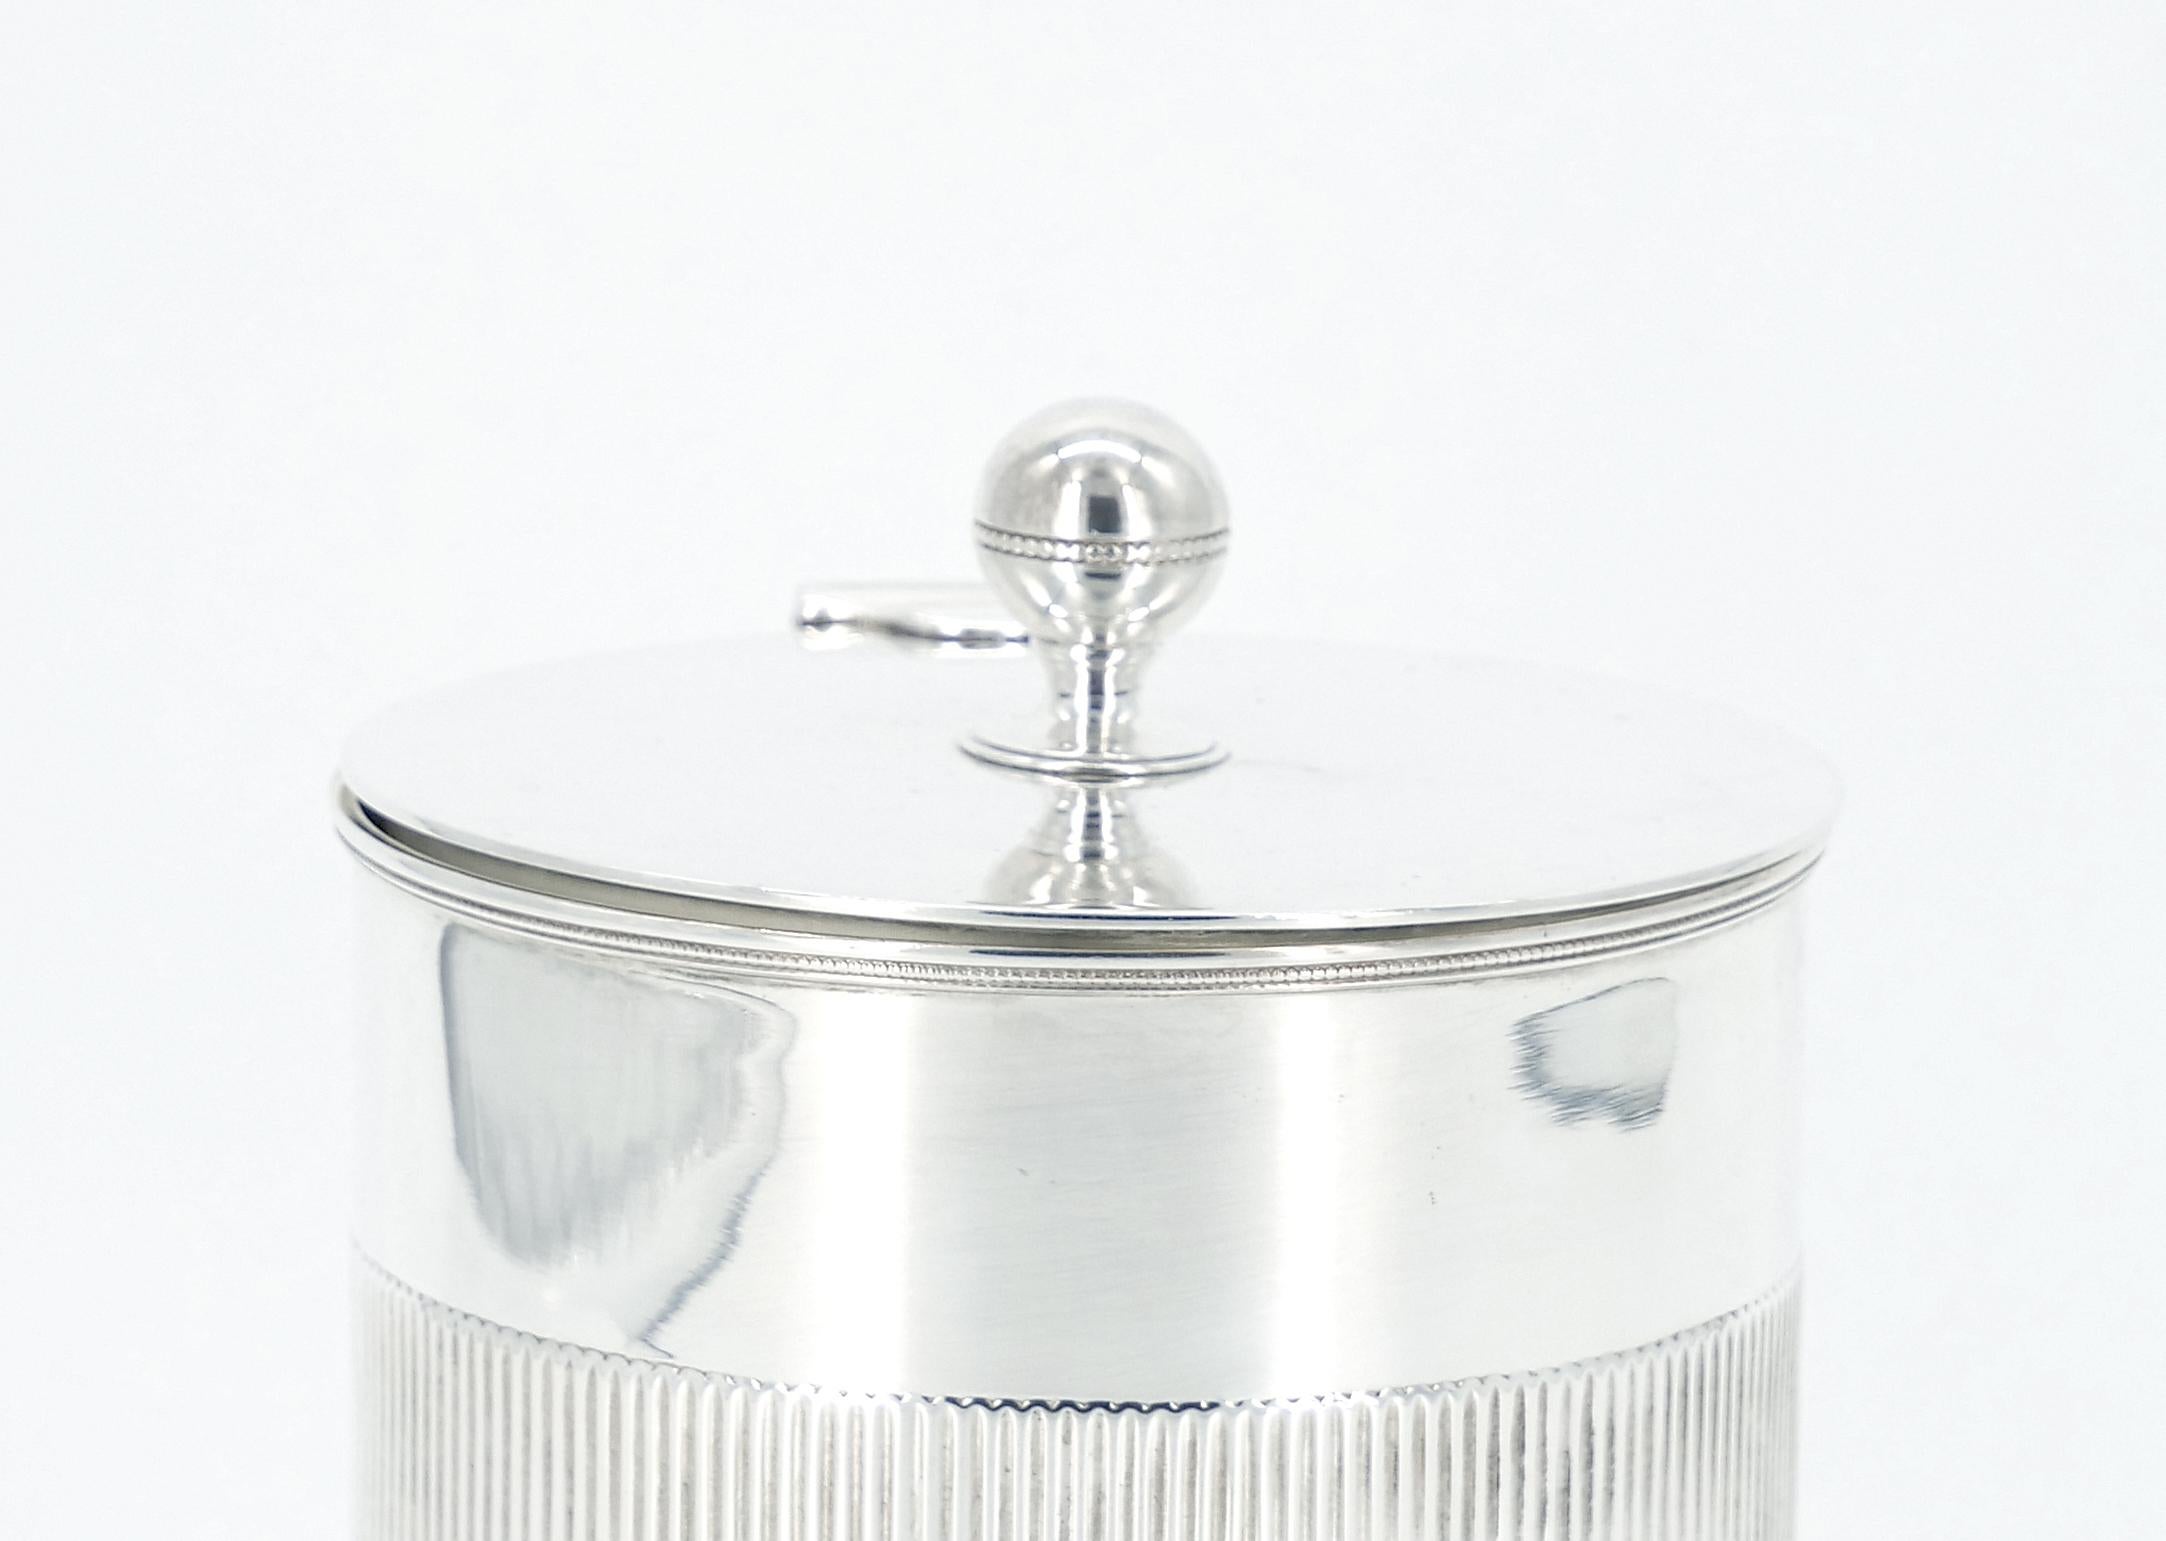 
Entdecken Sie den Inbegriff raffinierter Eleganz mit unserer außergewöhnlichen Teedose / Keksdose aus englischem Sheffield-Silber in runder Form. Dieses exquisite Stück verbindet nahtlos Funktionalität mit zeitloser Schönheit, was es zu einer